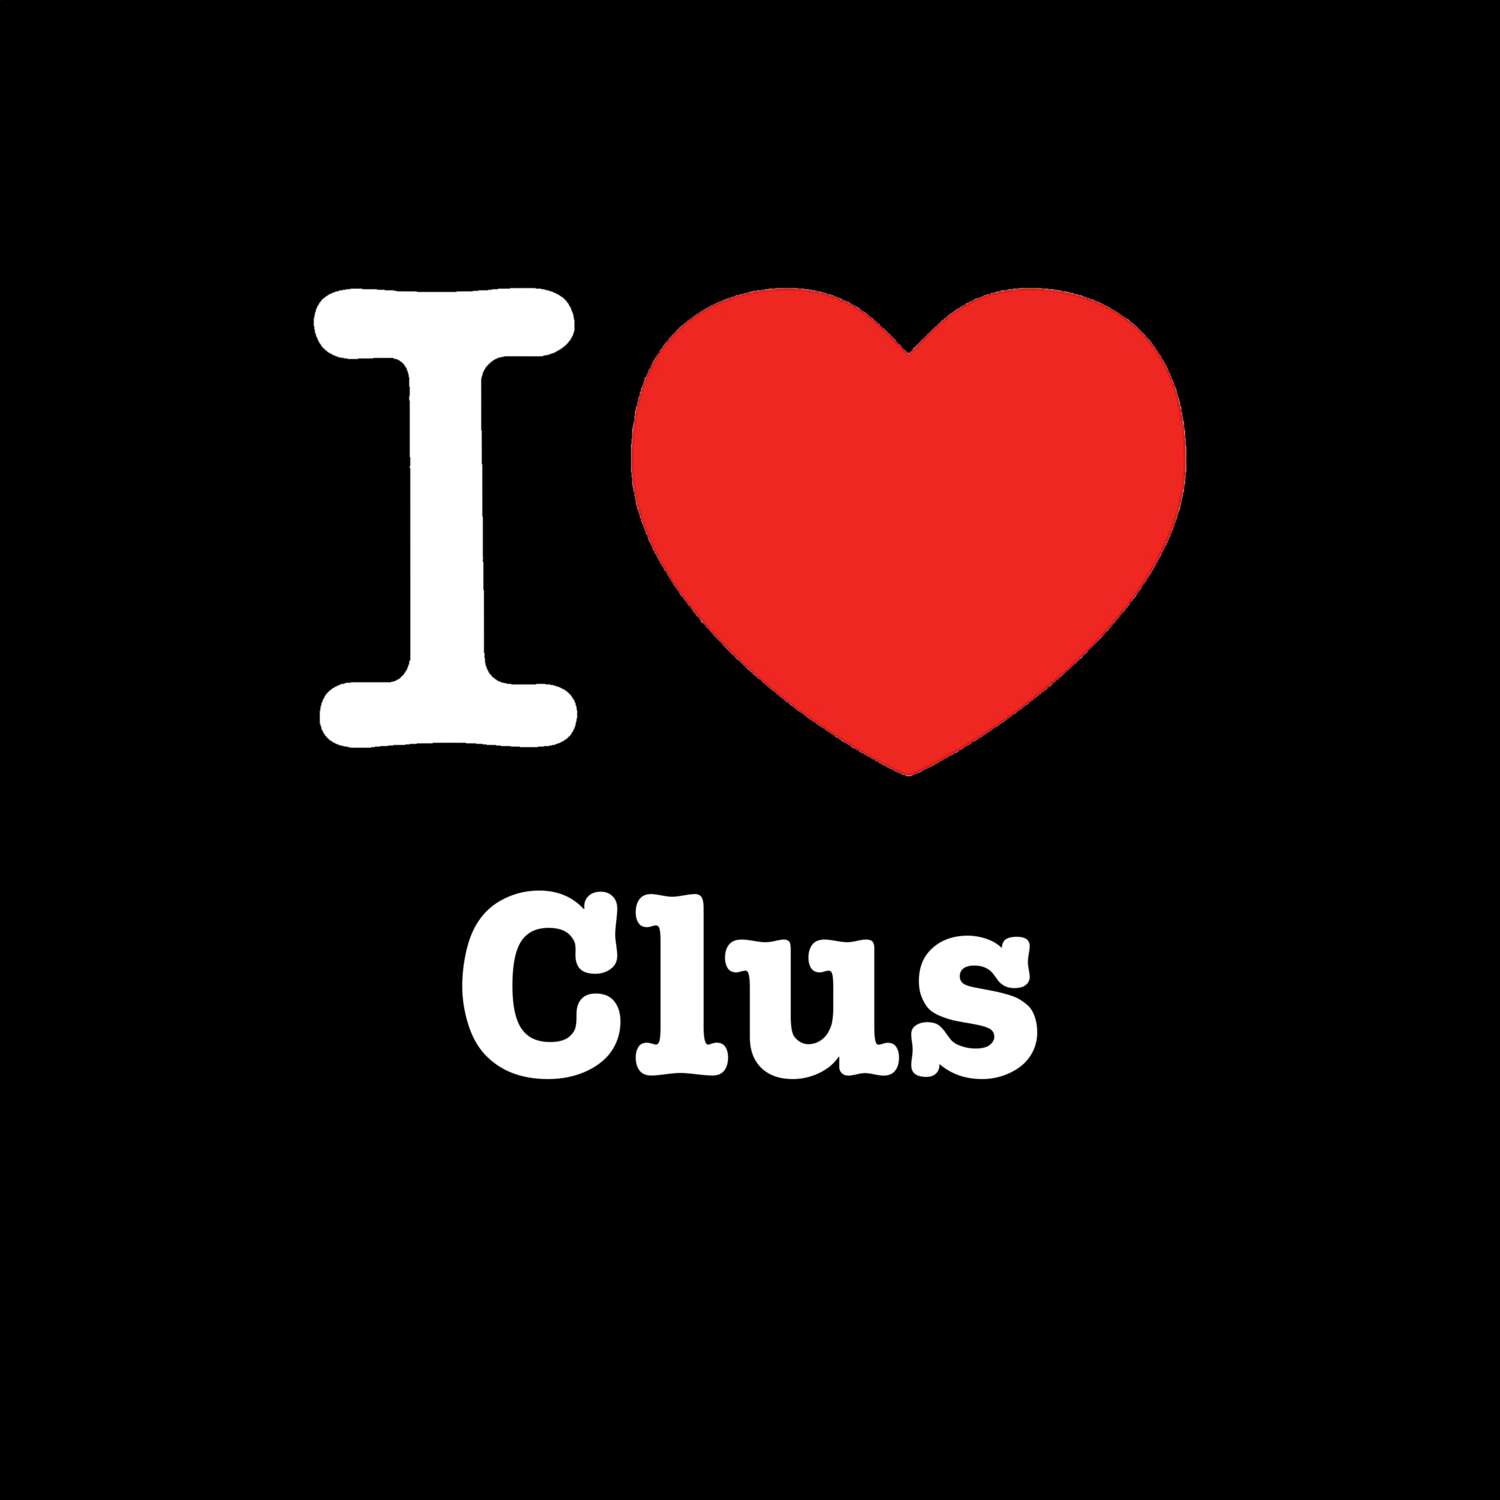 Clus T-Shirt »I love«